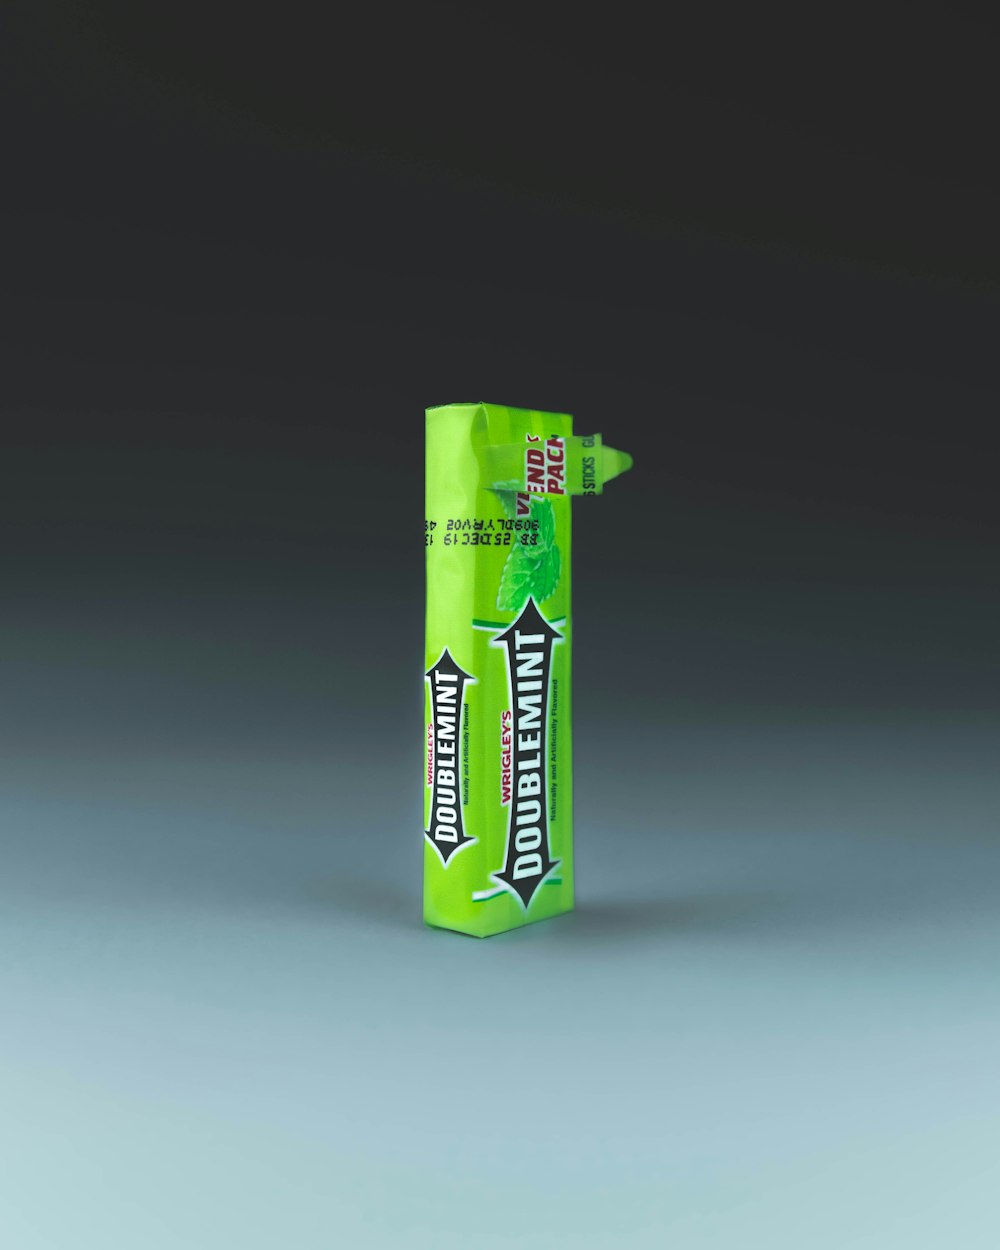 Caja de caramelos Doublemint verde